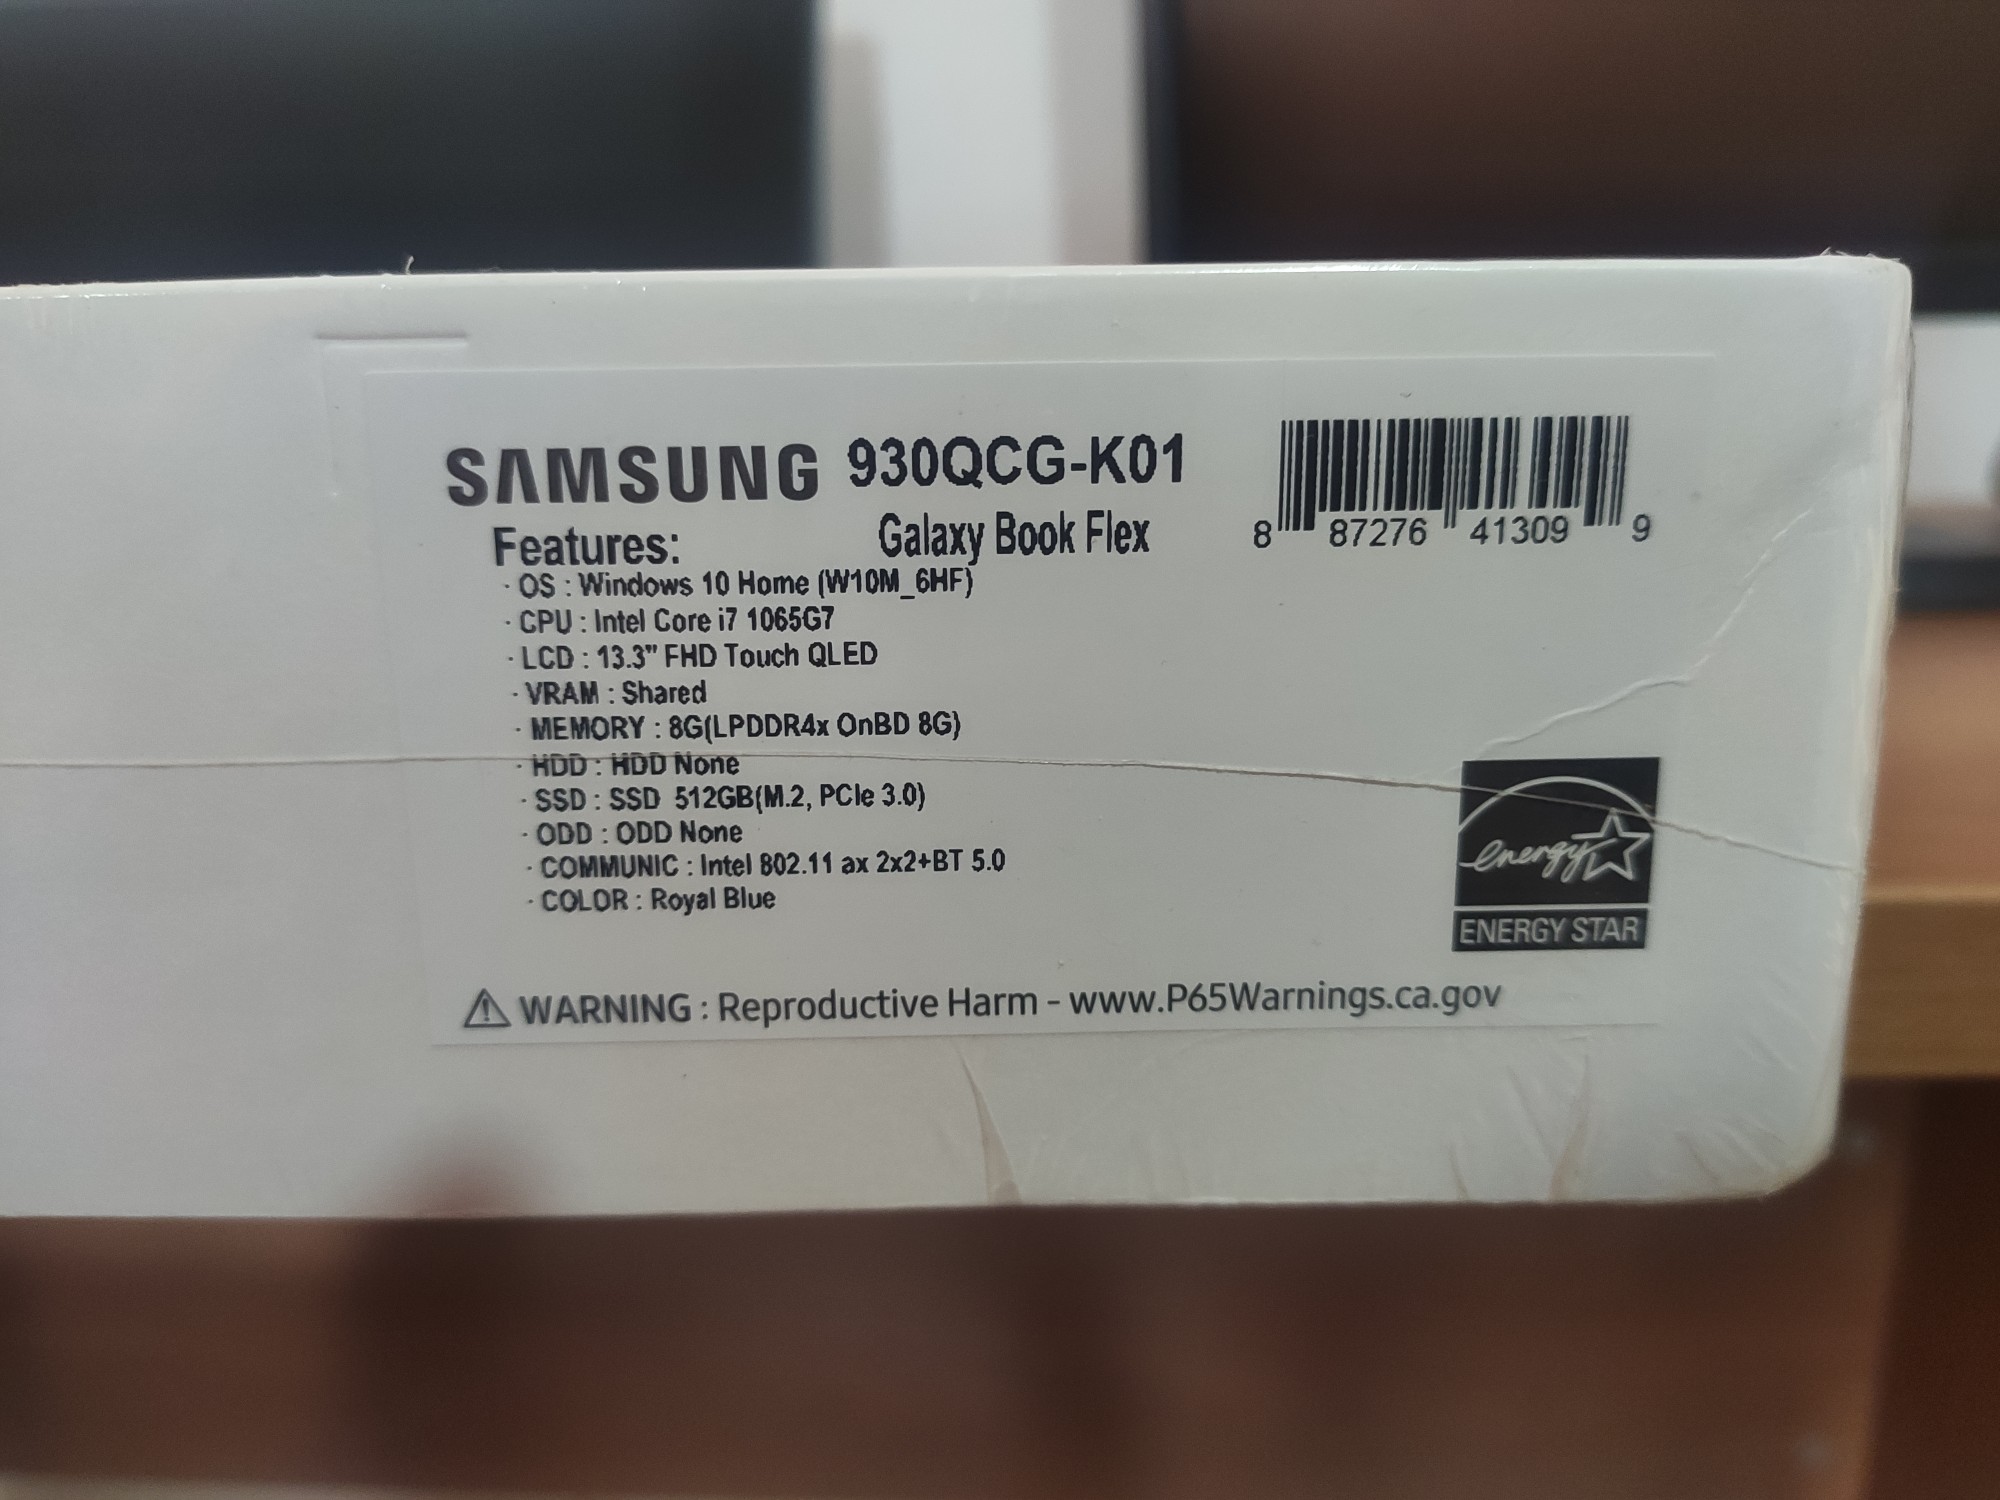 Vendo laptop Samsung Galaxy Book Flex totalmente nueva en su caja, sellada.